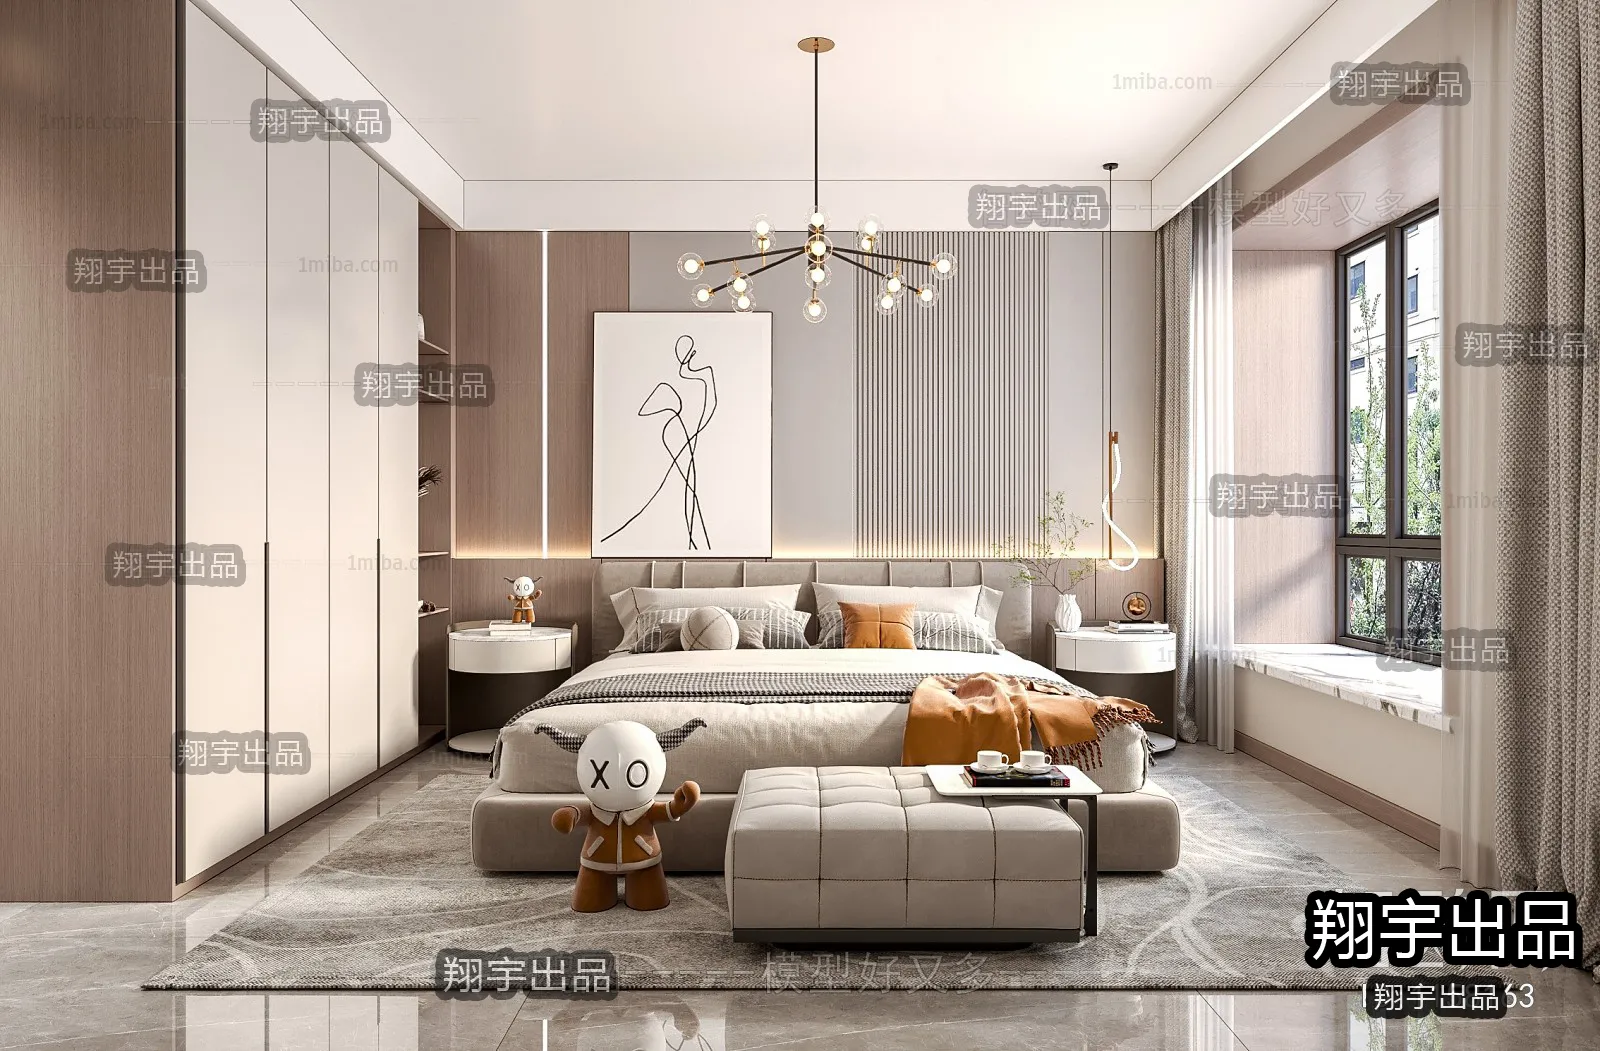 Bedroom – Modern Interior Design – 3D Models – 052